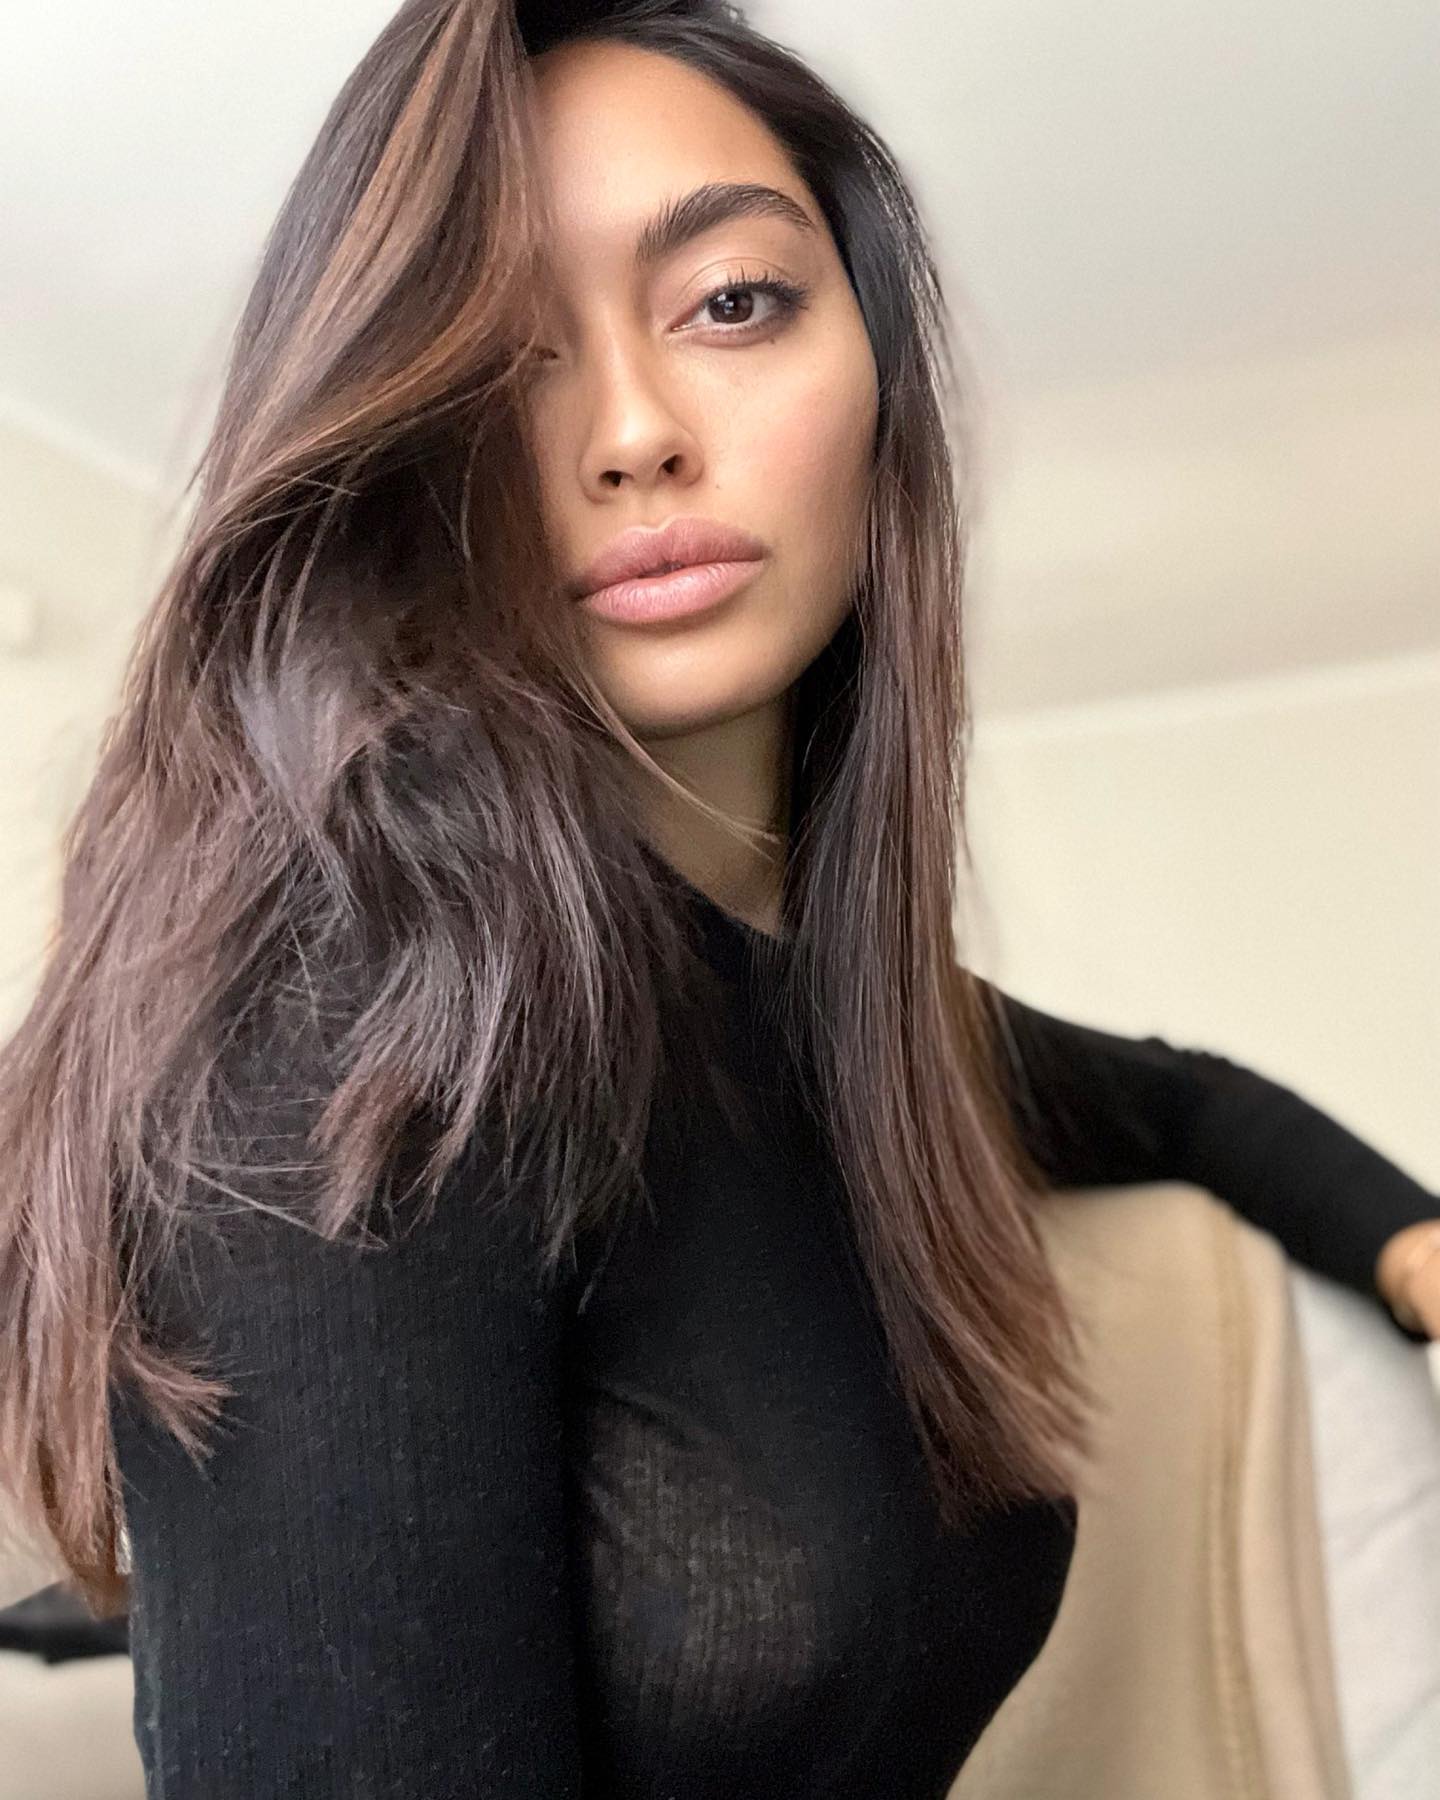 Ambra Gutierrez Shares her Portrait Photos in Instagram, March 2022 2